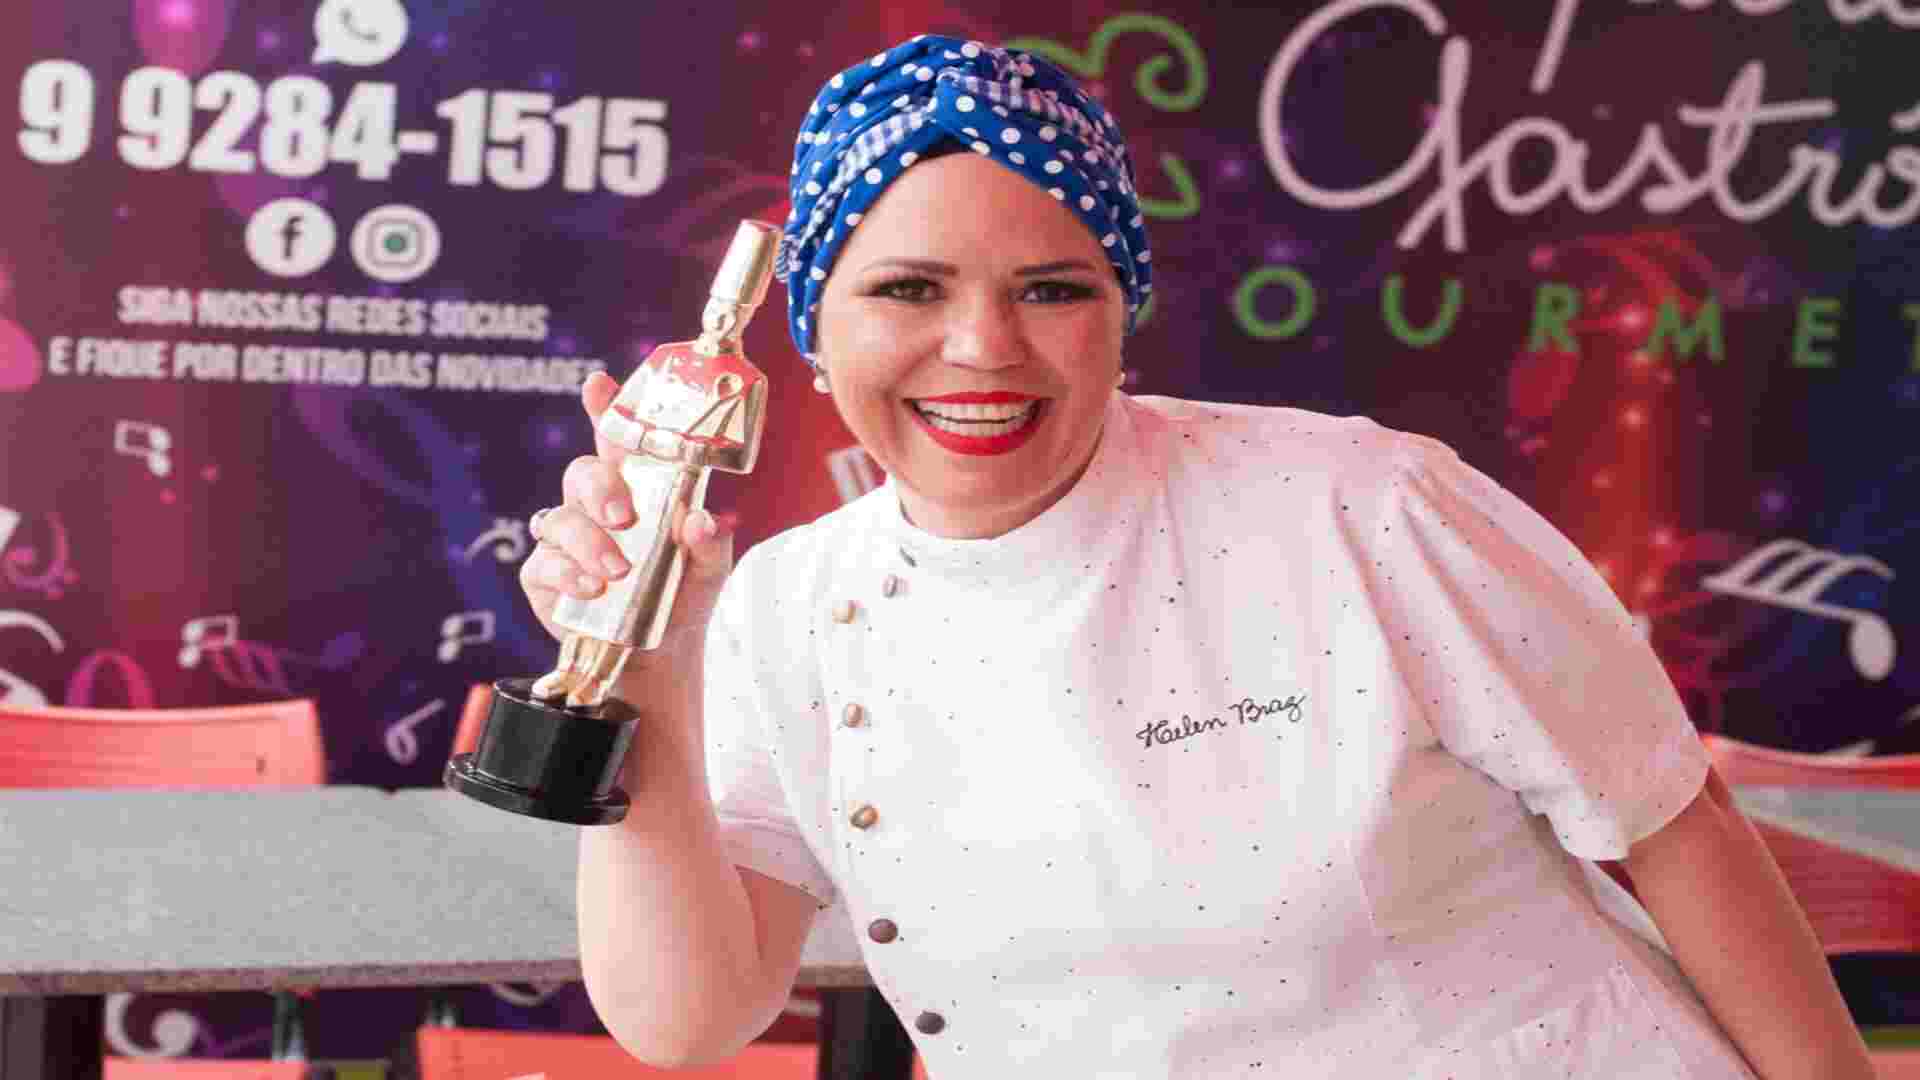 Considerada a rainha das quentinhas, chef de Campo Grande concorre